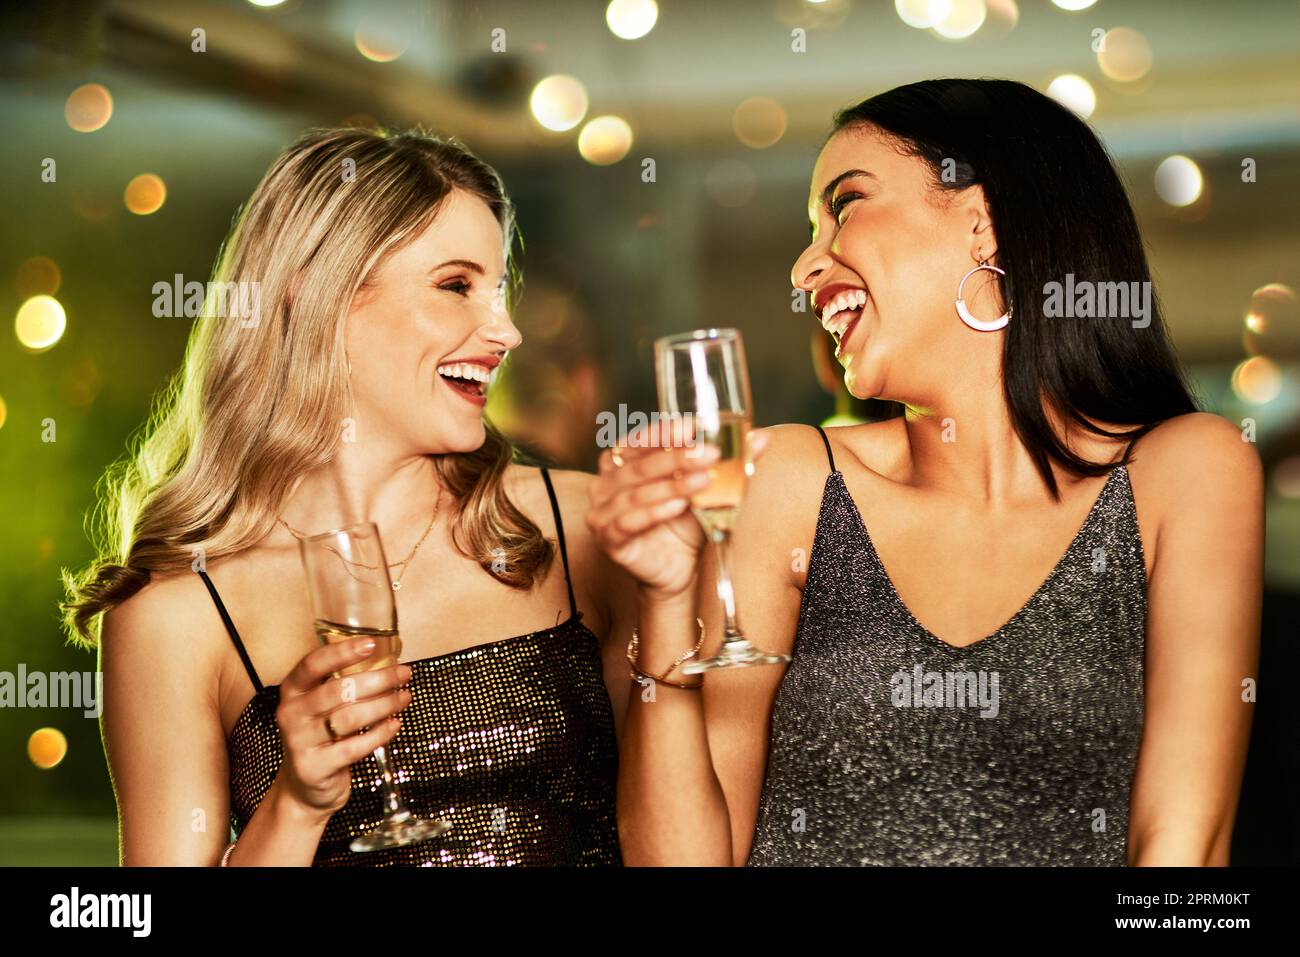 Wir können für immer jung sein. Zwei fröhliche junge Frauen, die abends auf der Tanzfläche eines Clubs tanzen und einen Drink trinken Stockfoto